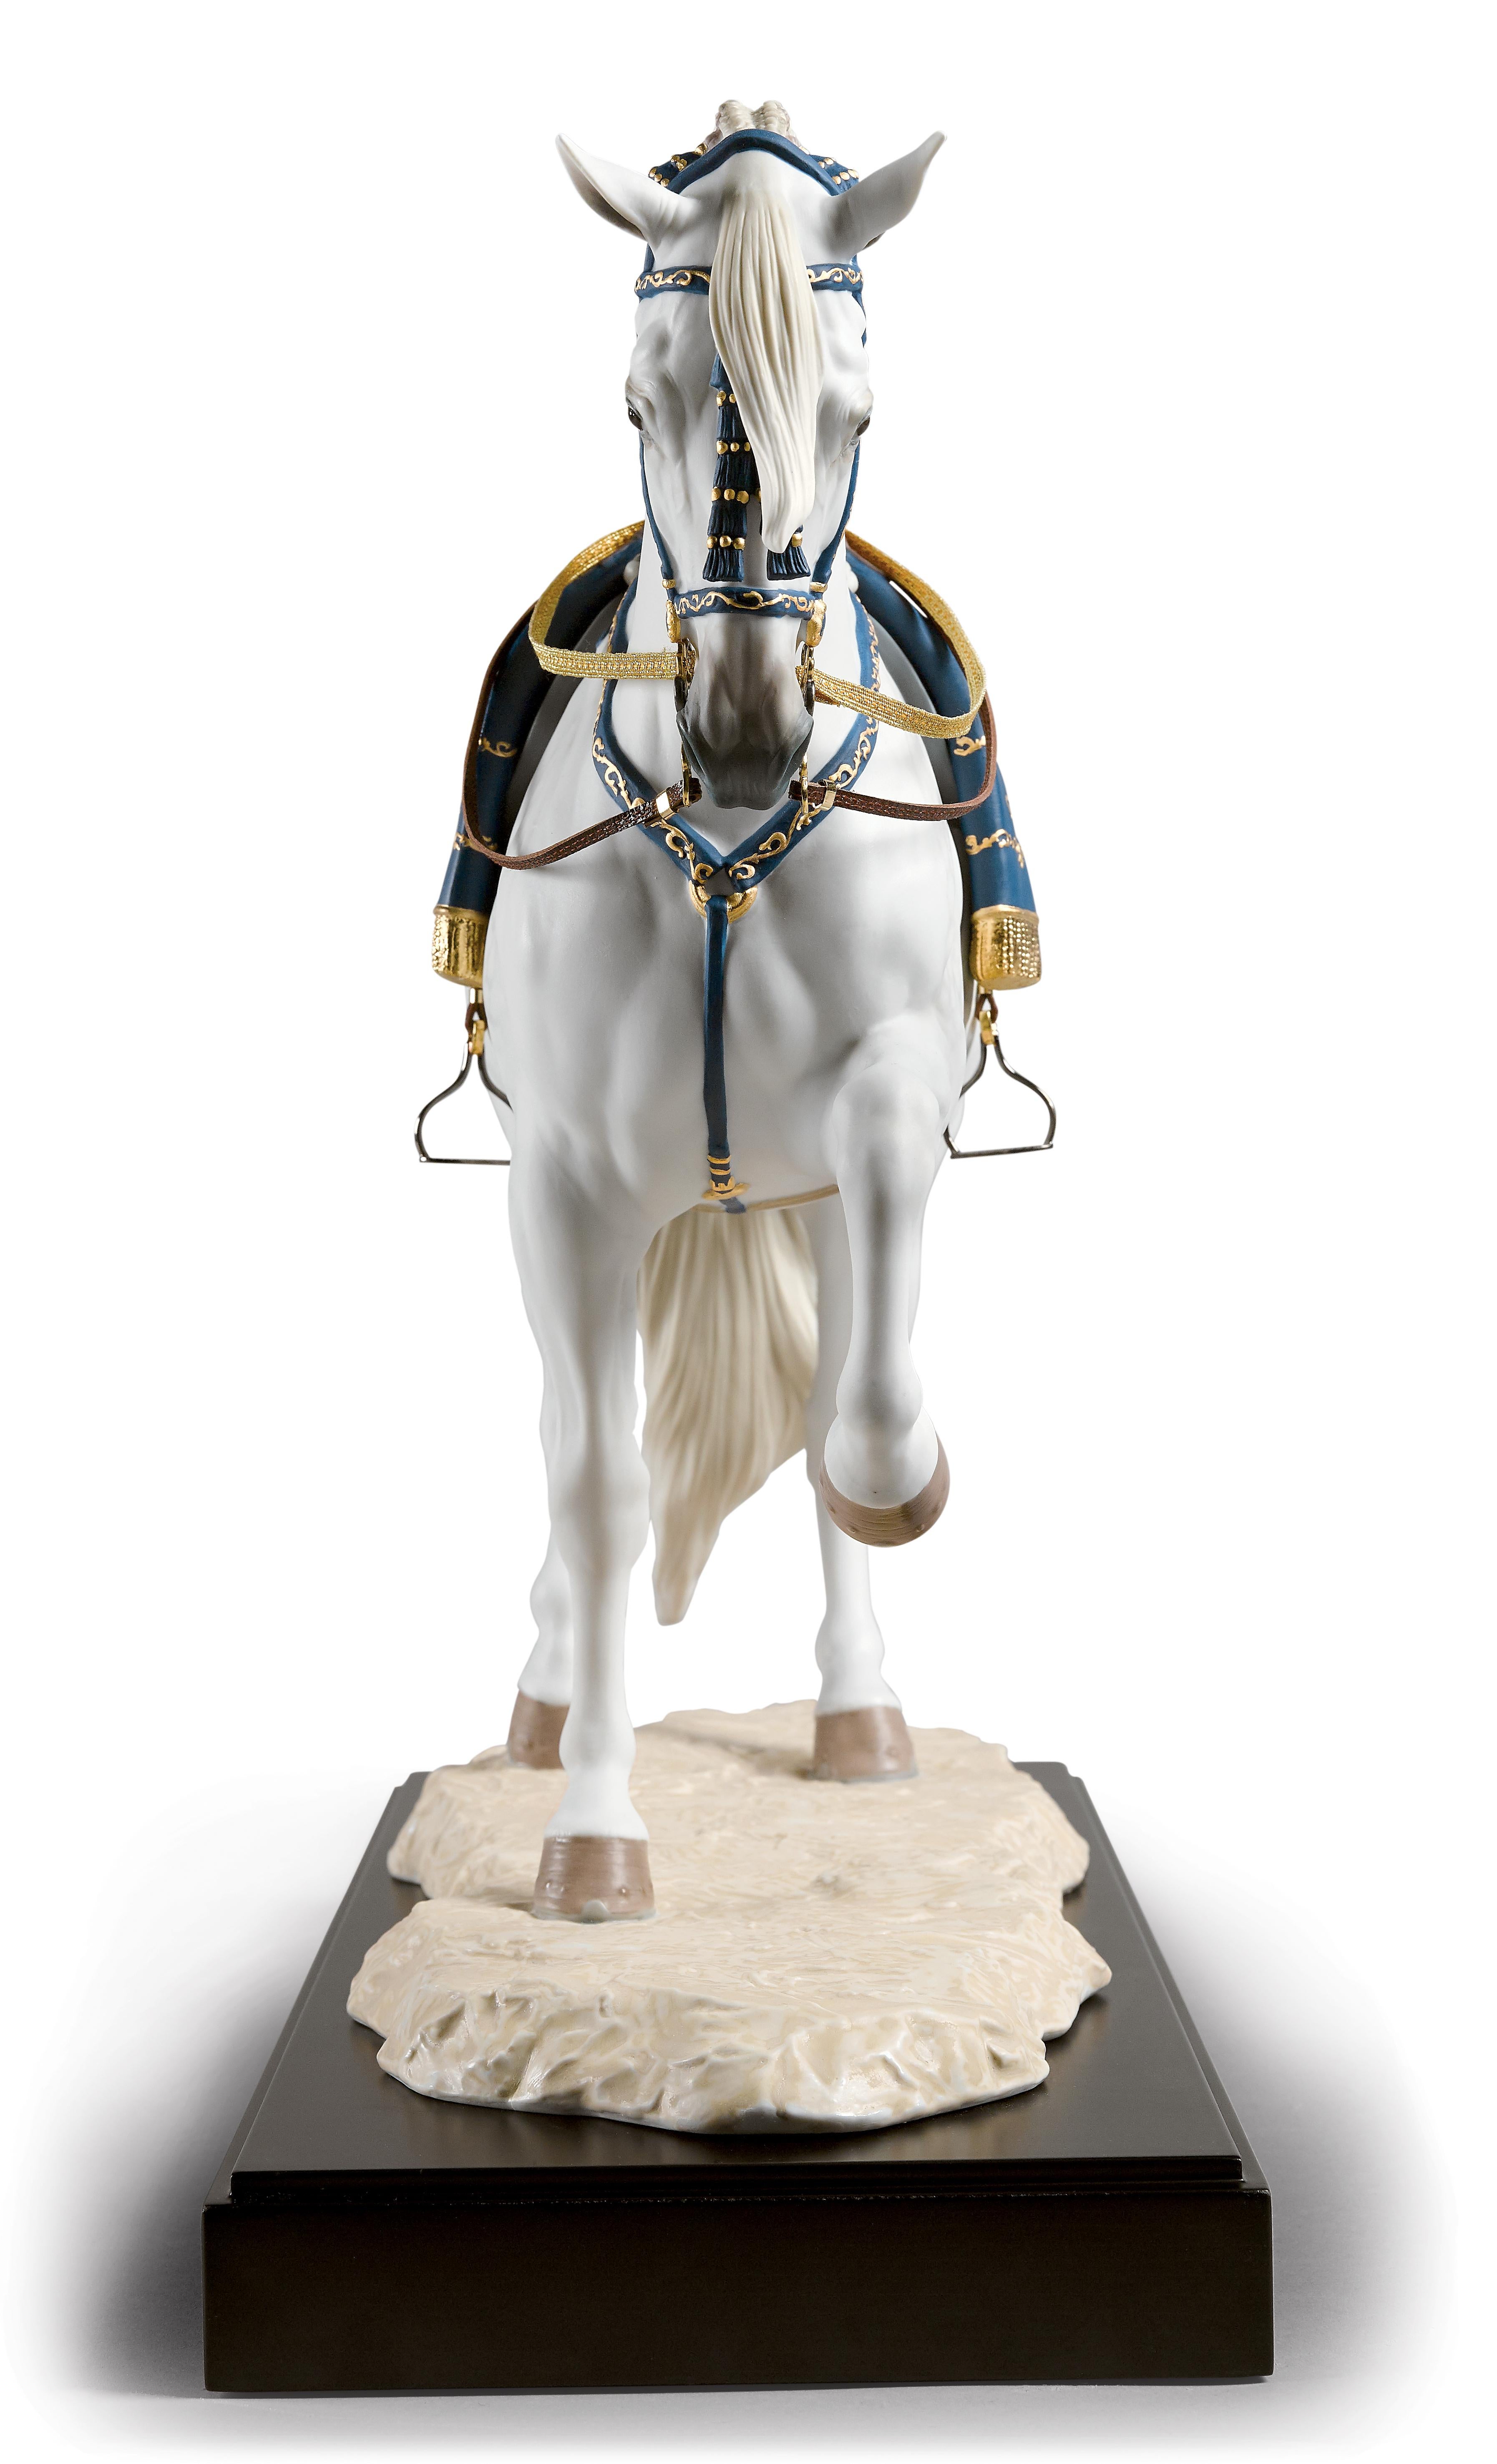 Limitierte Auflage der Skulptur eines spanischen Pferdes im Trab aus mattem Porzellan, verziert mit blauem und goldenem Lüster auf Kopf, Brust, Sattel und Decke. Das spanische Pferd, das von den Vorbildern der Königlichen Andalusischen Reitschule